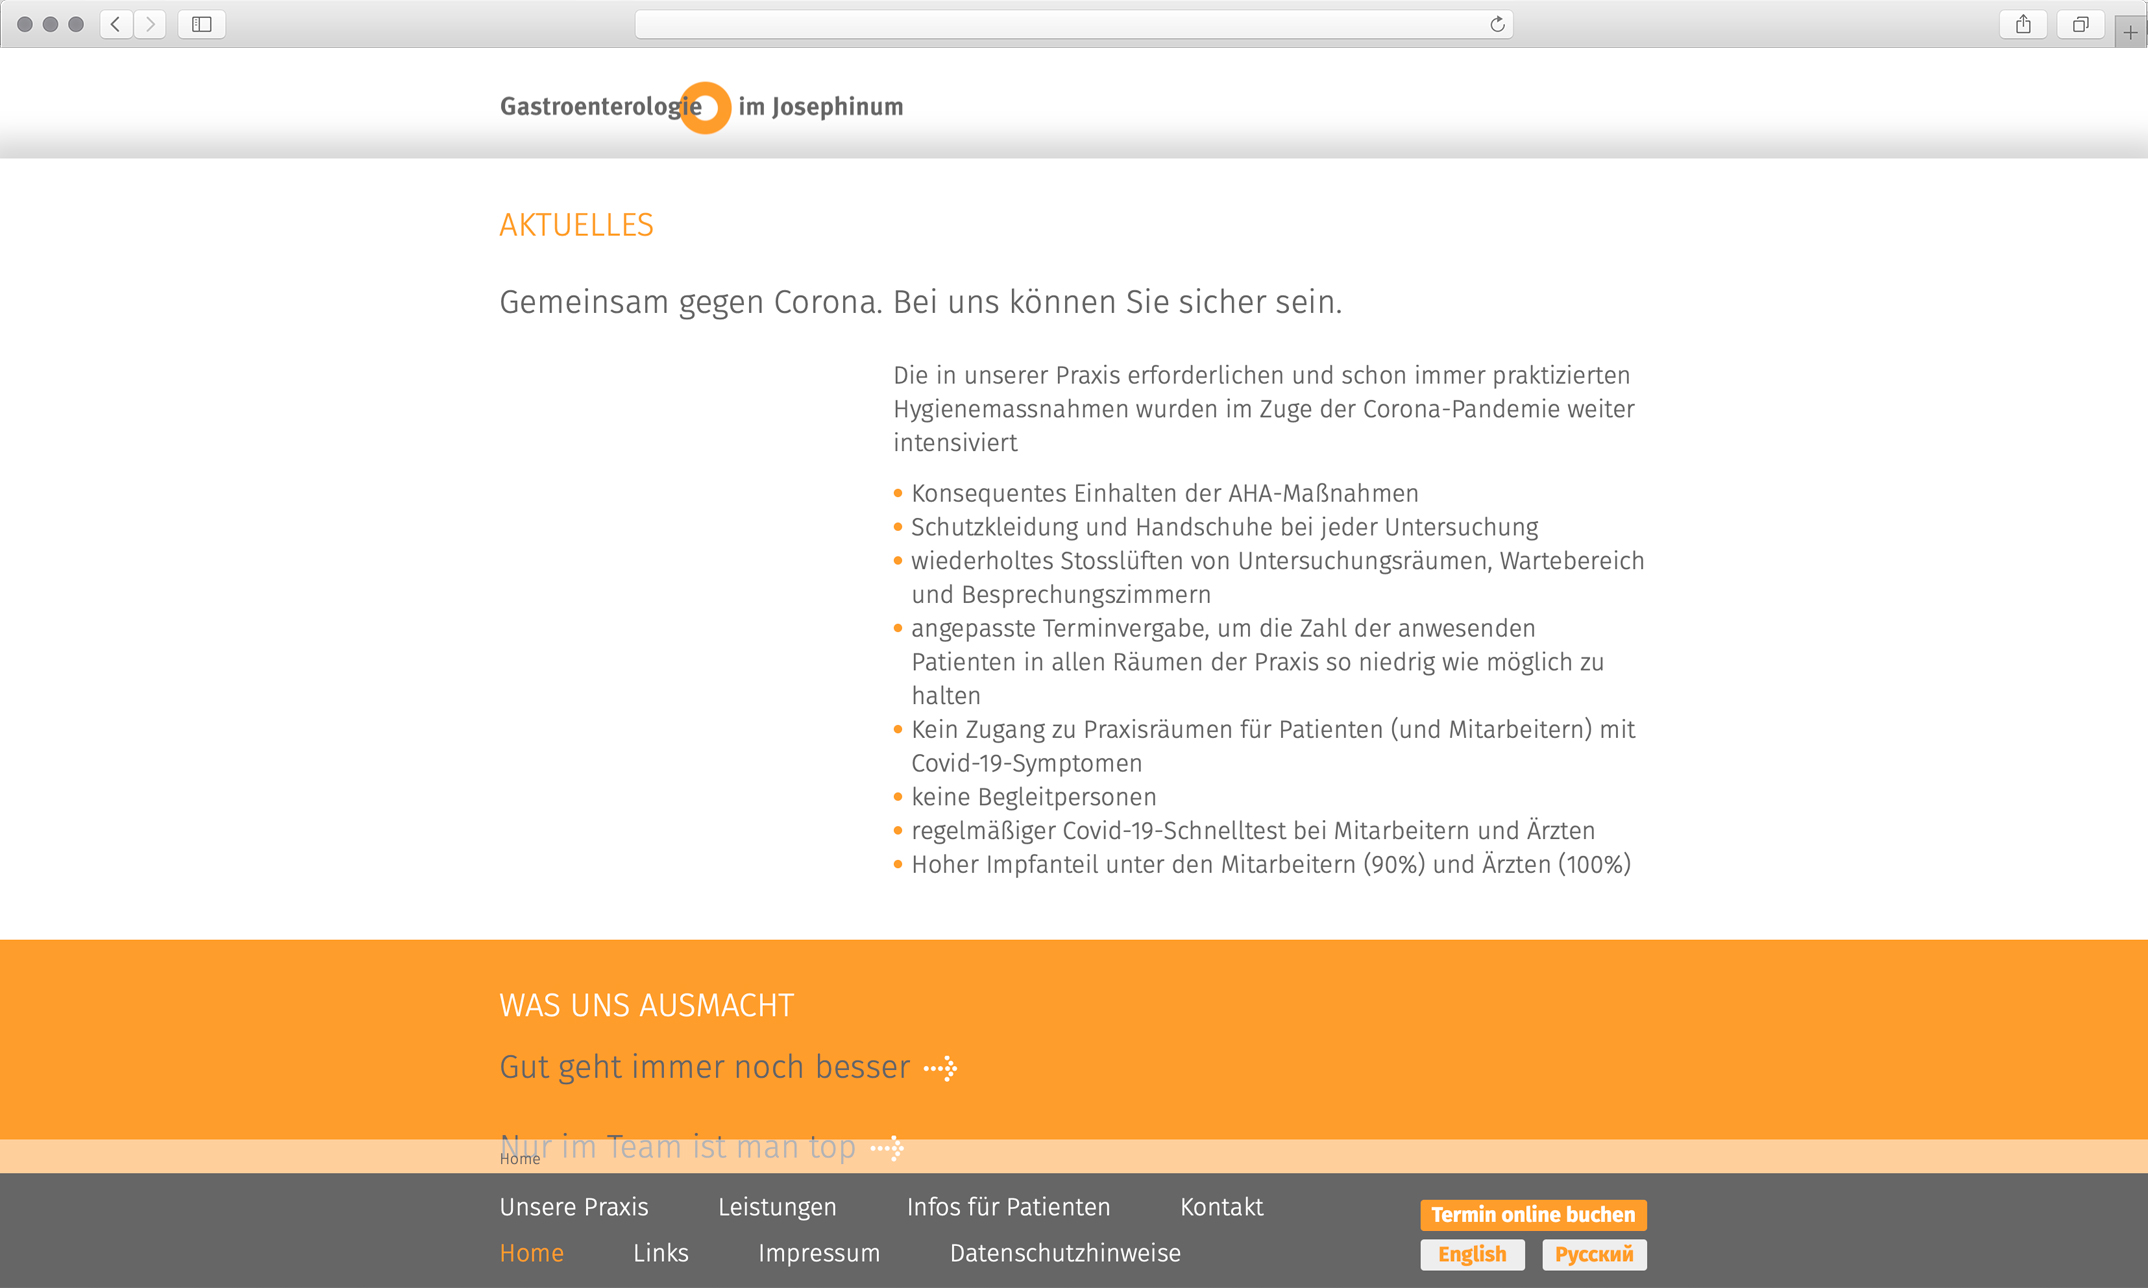 Webdesign, Startseite Aktuelles – Corporate Website, Gastroenterologie im Josephinum München